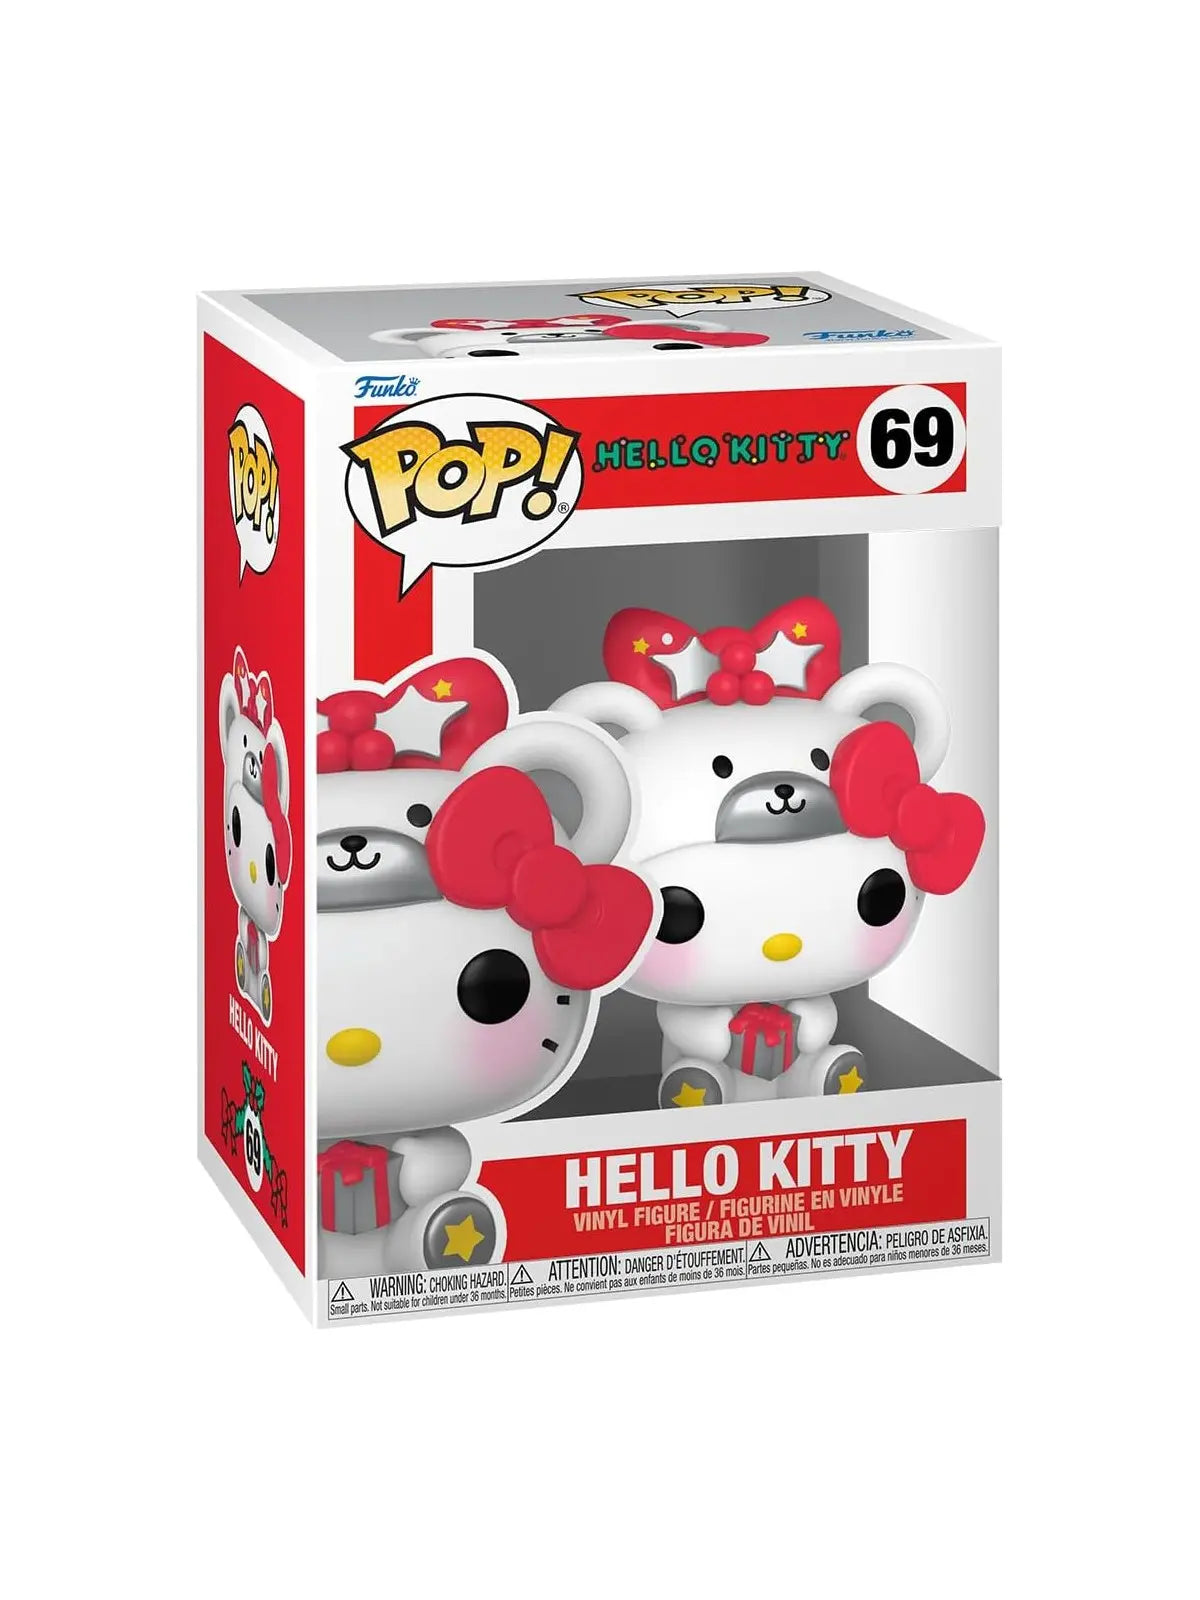 Funko Pop Hello Kitty 69 xmas edition